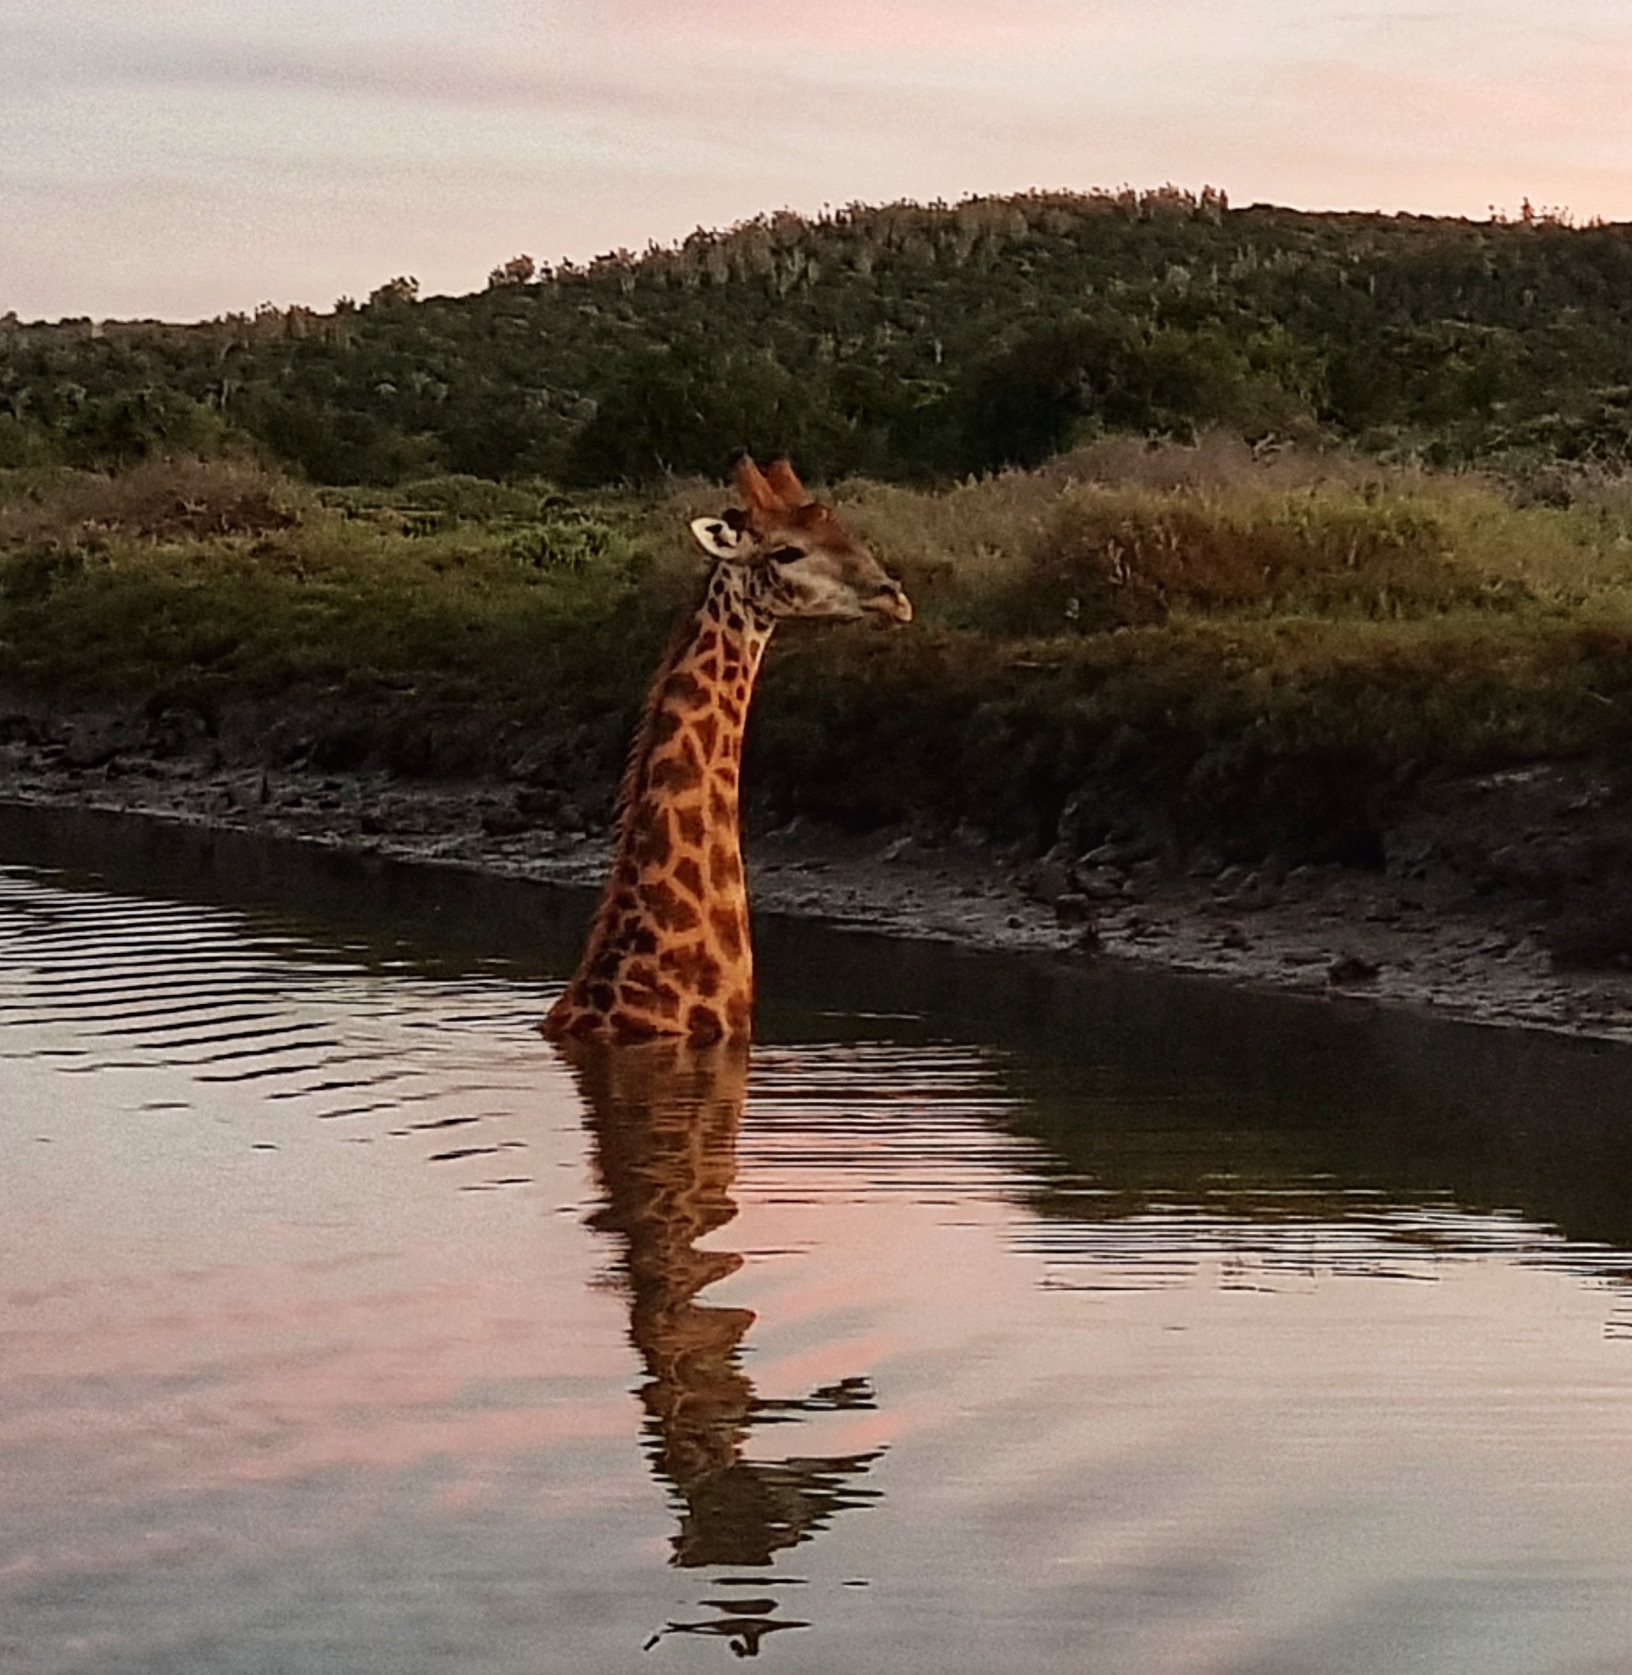 Kariega Giraffe Top 10 Safari Photo 2019